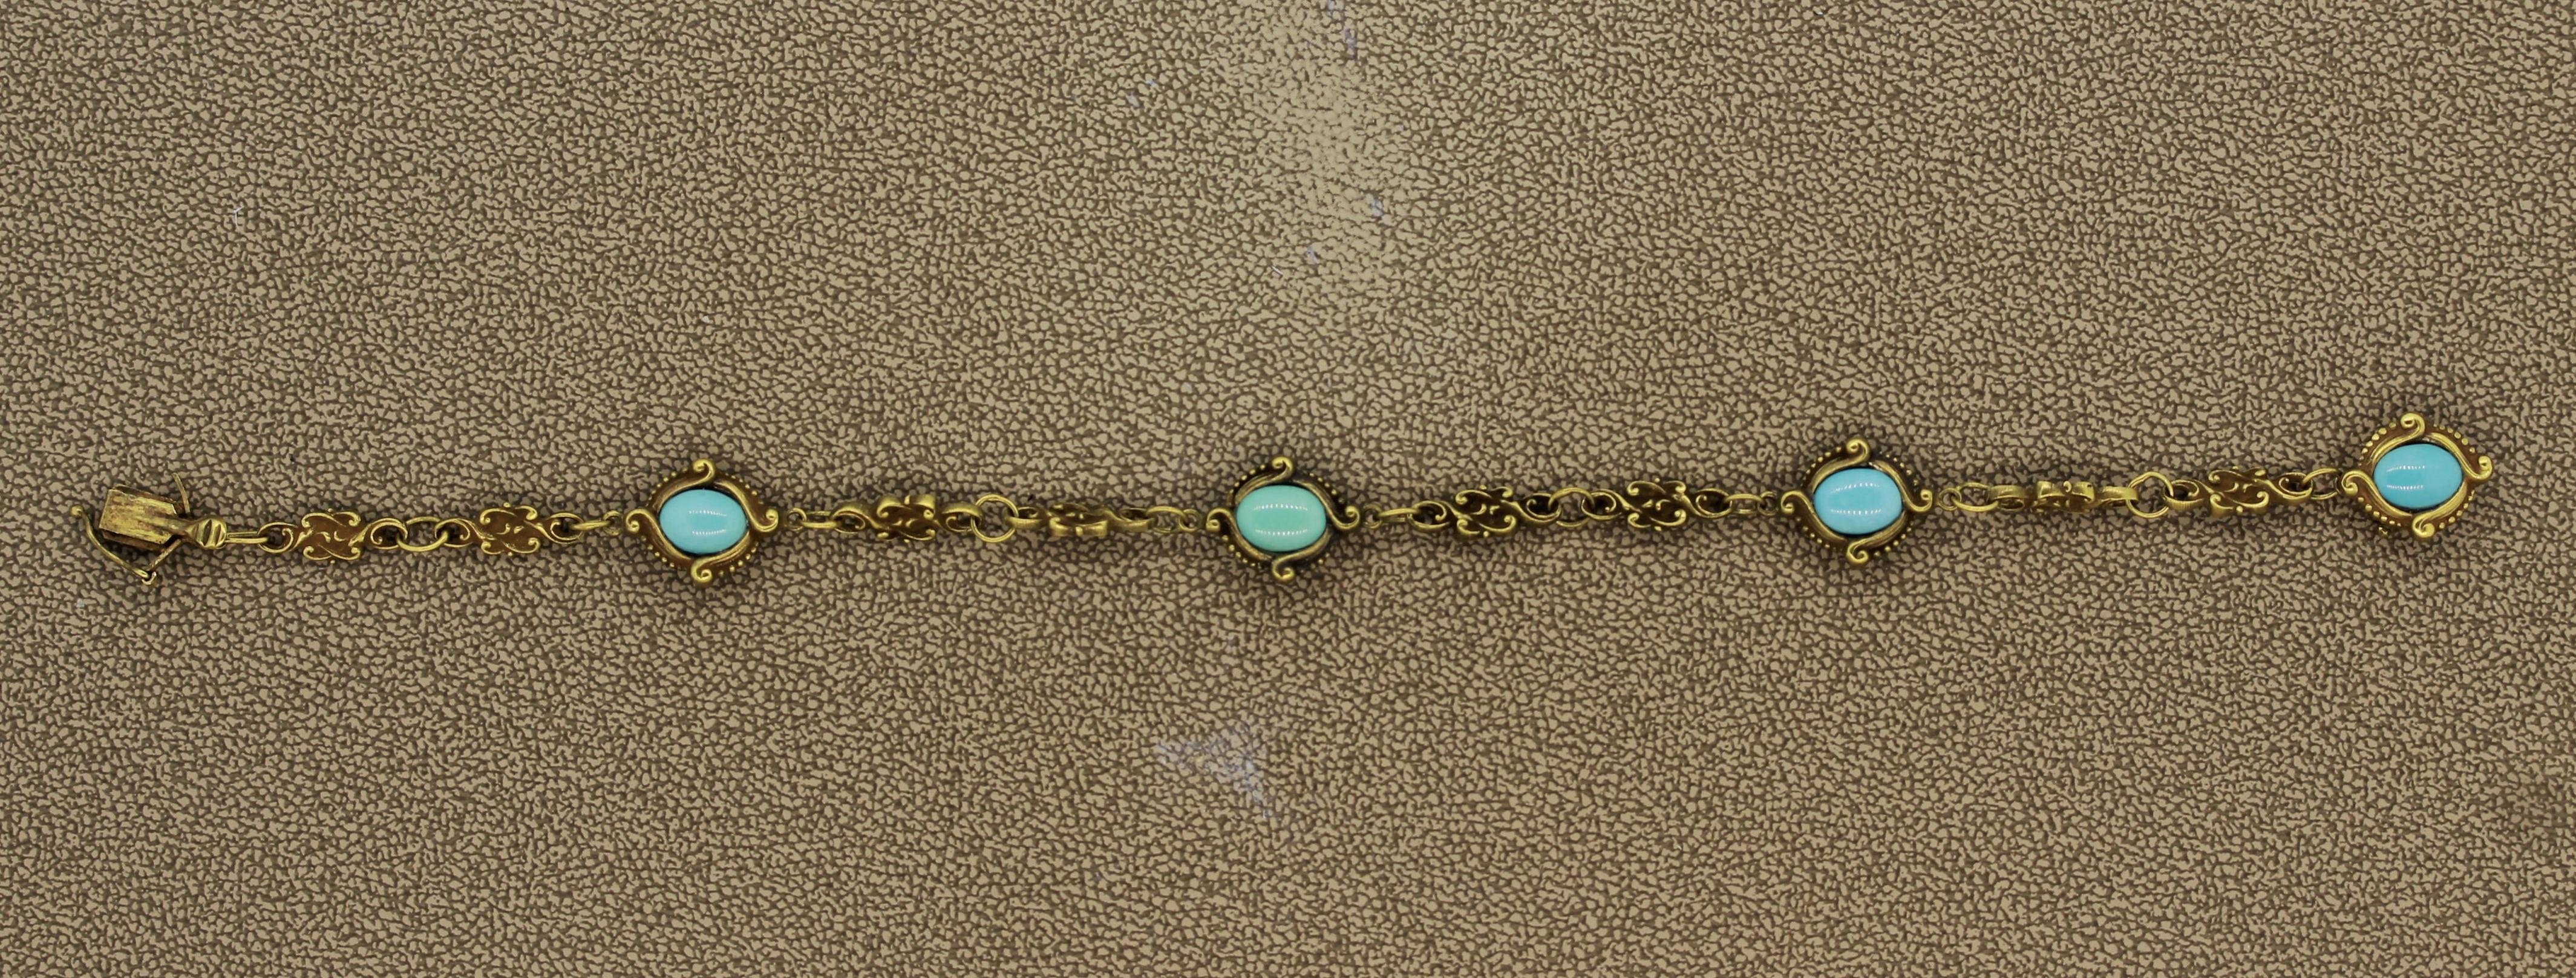 Ein klassisches Stück für die Art Nouveau Ära in den frühen 1900er Jahren, dieses süße Armband verfügt über 4 Stücke von feinen himmelblauen Türkis. Handgefertigt aus 14-karätigem Gelbgold mit filigranem Design auf jedem Glied und um jeden Türkis.